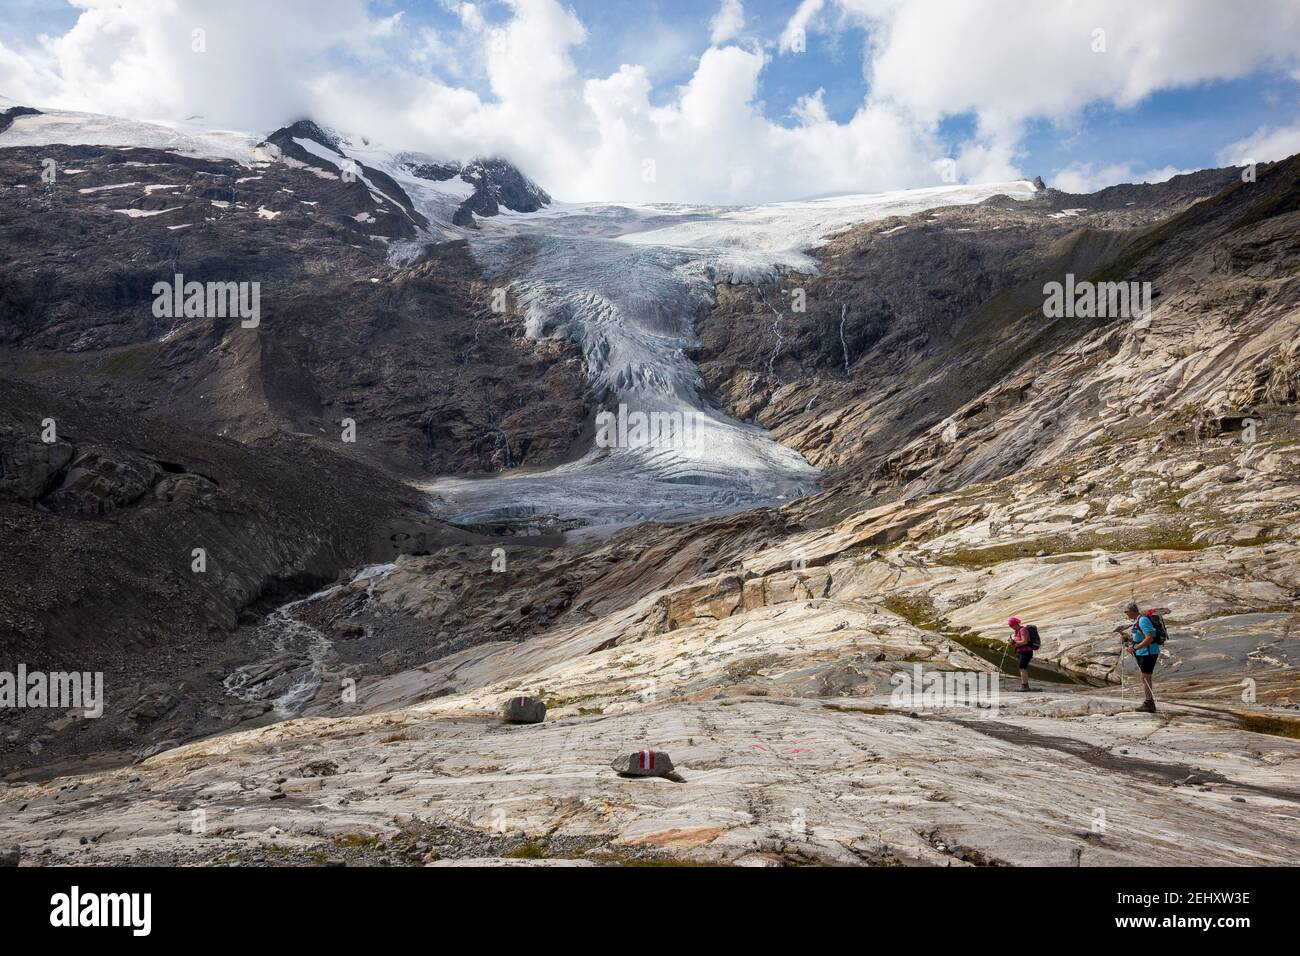 Vom Gletscher geglättete Felsen. Schlatenkees Gletscher. Venediger Berggruppe. Osttirol. Österreichische Alpen. Europa Stockfoto